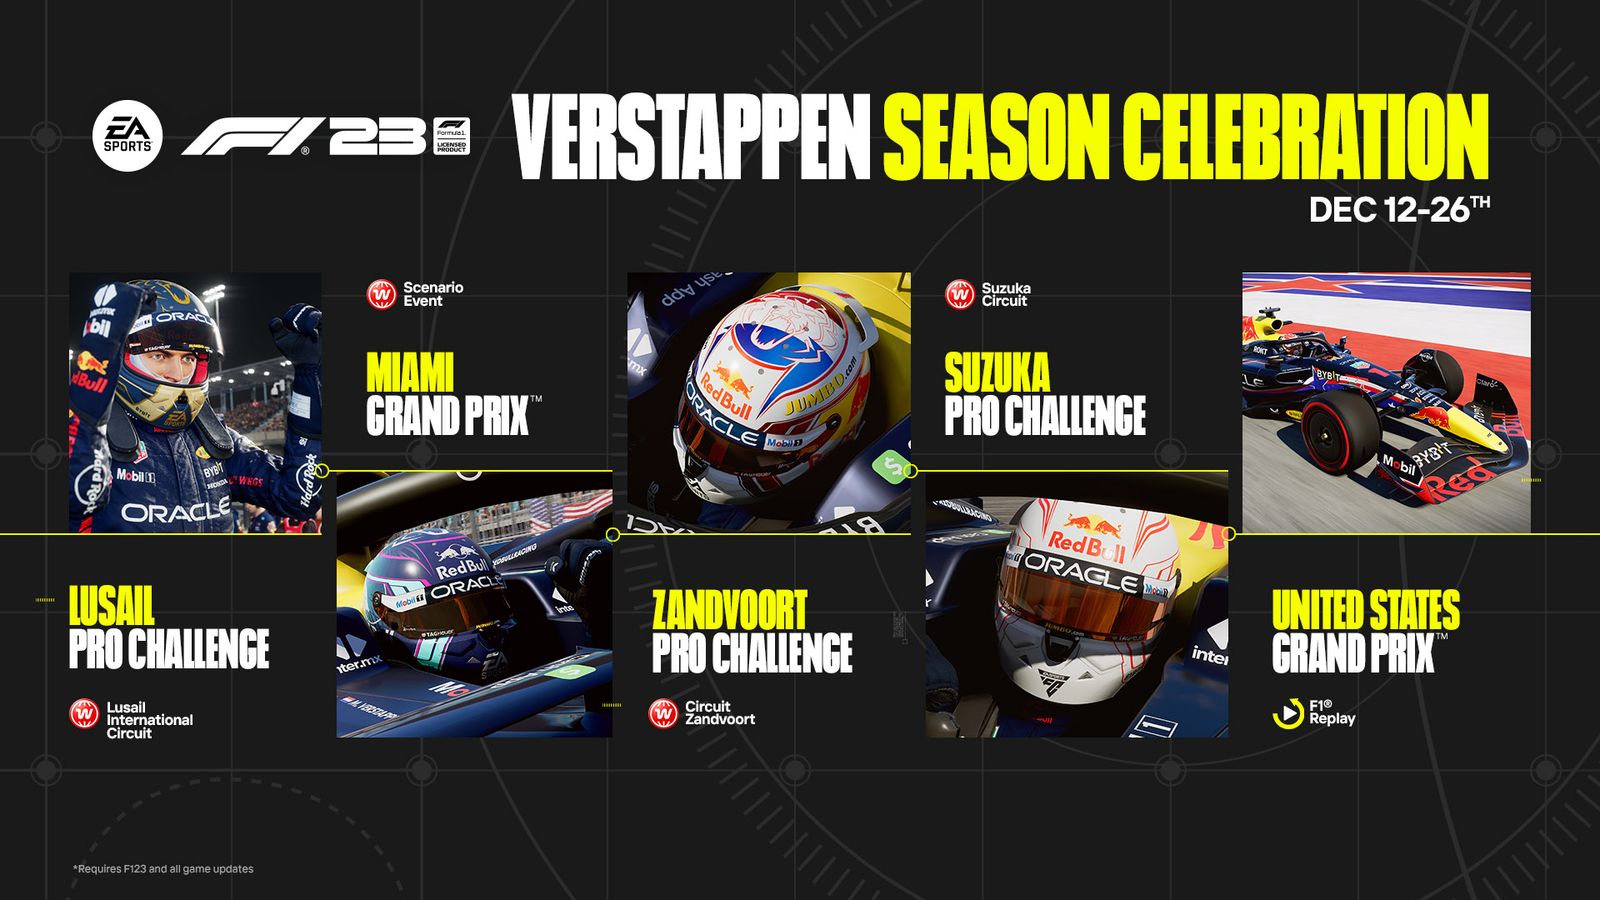 F1 23 Max Verstappen Pro Challenges